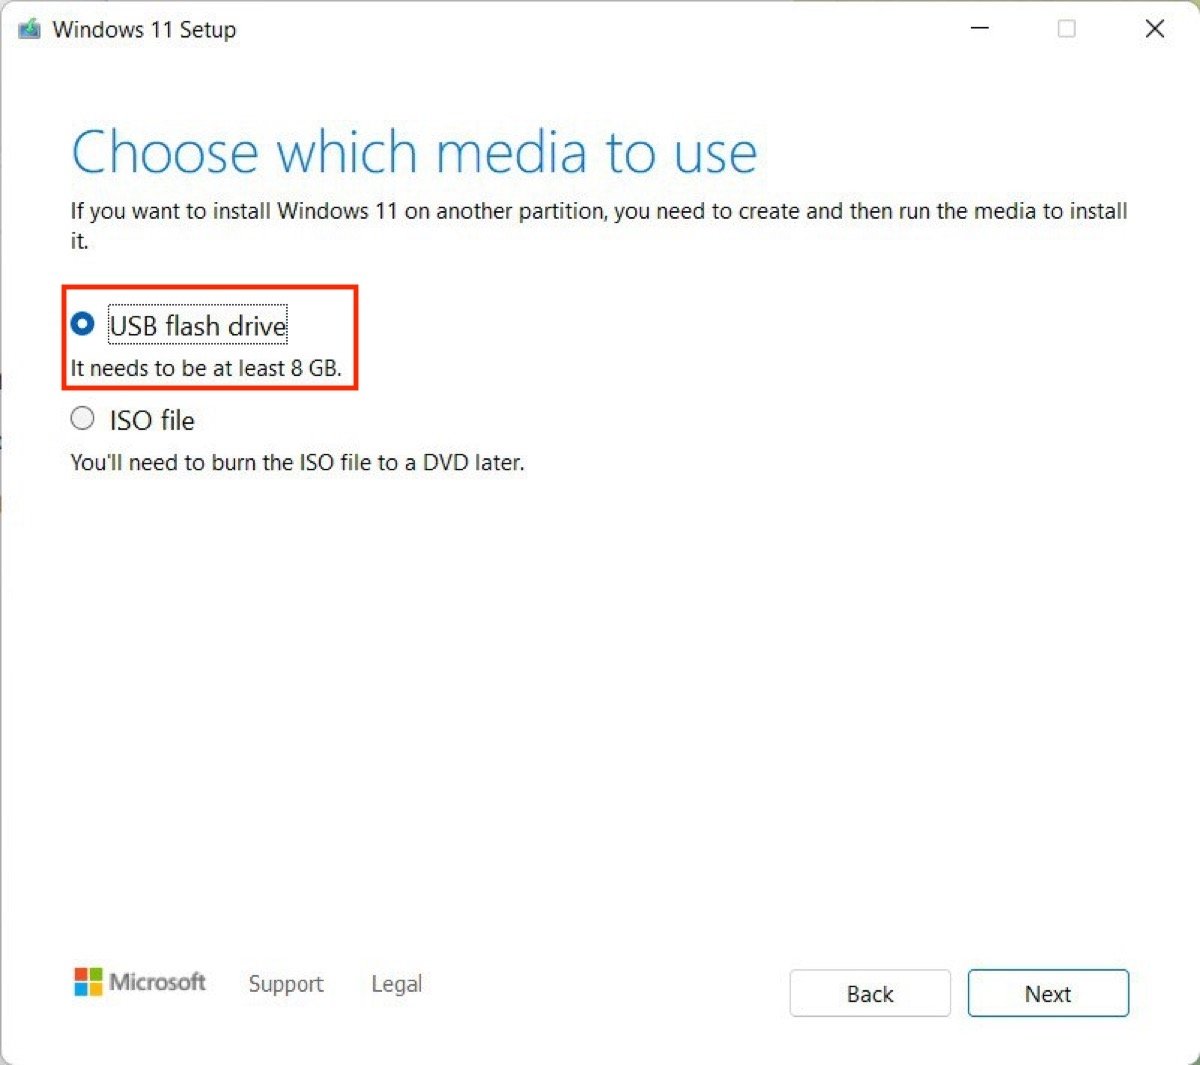 Sélectionnez USB pour enregistrer Windows 11